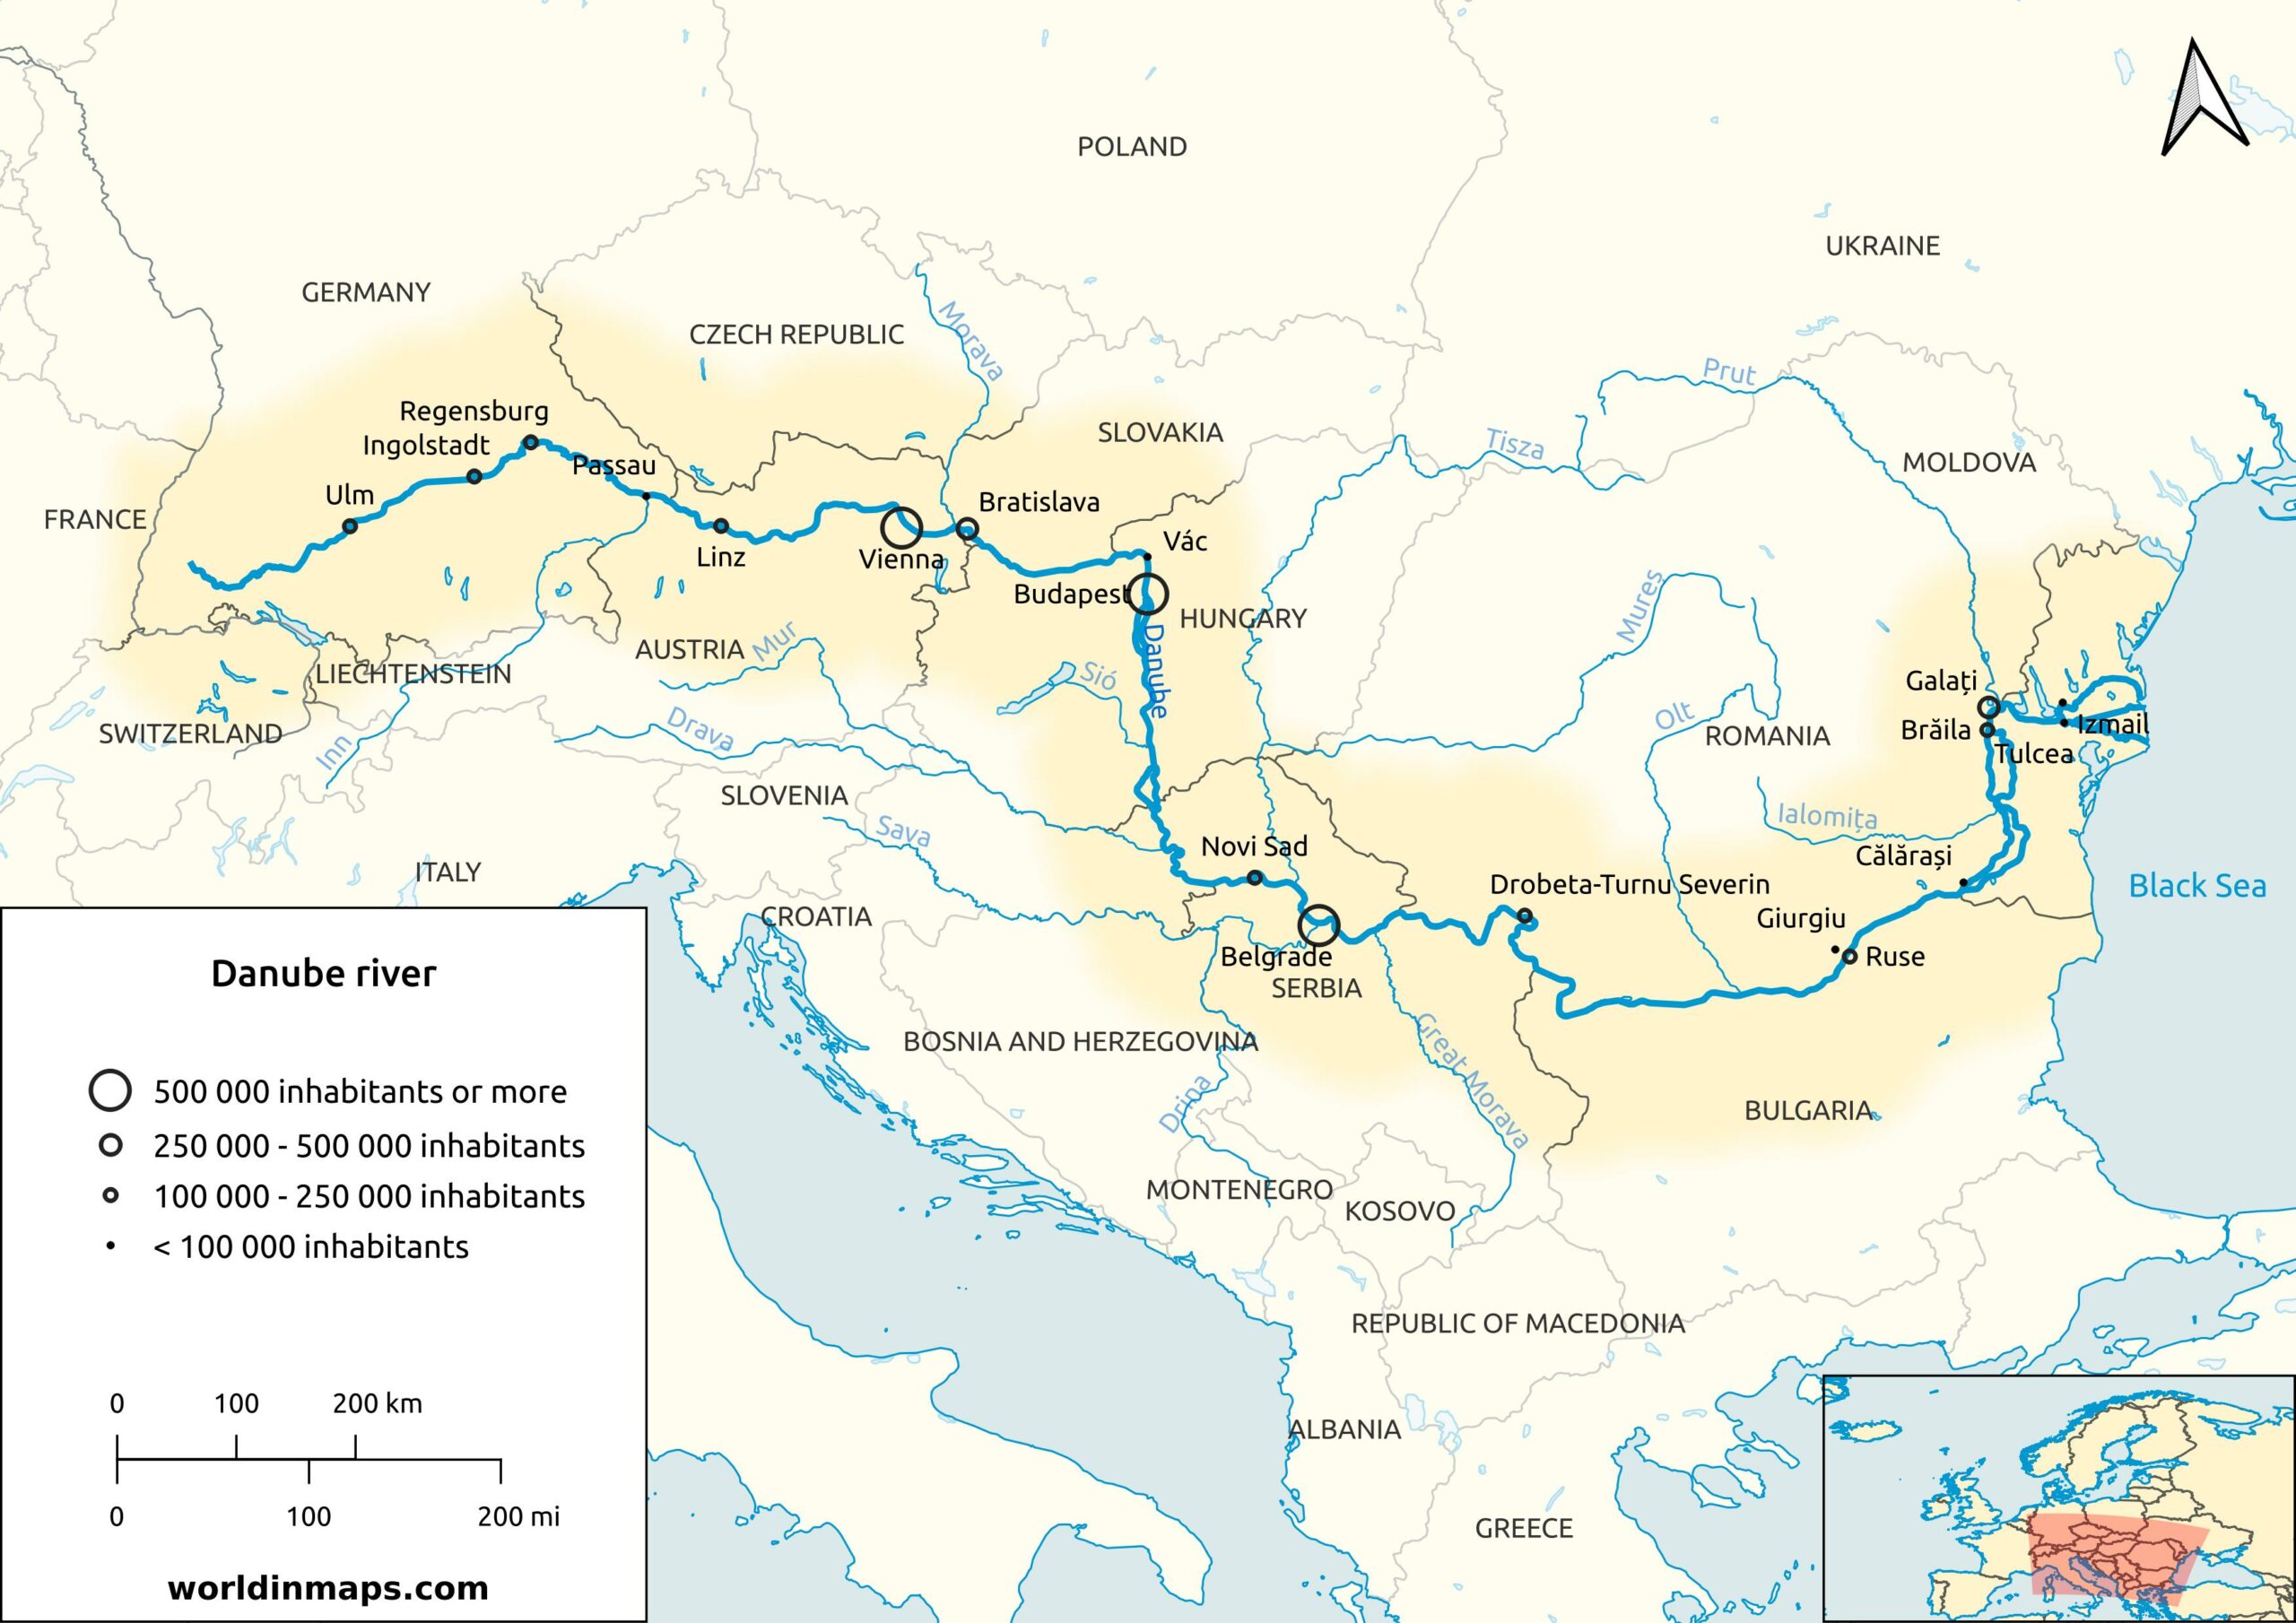 map of europe danube river